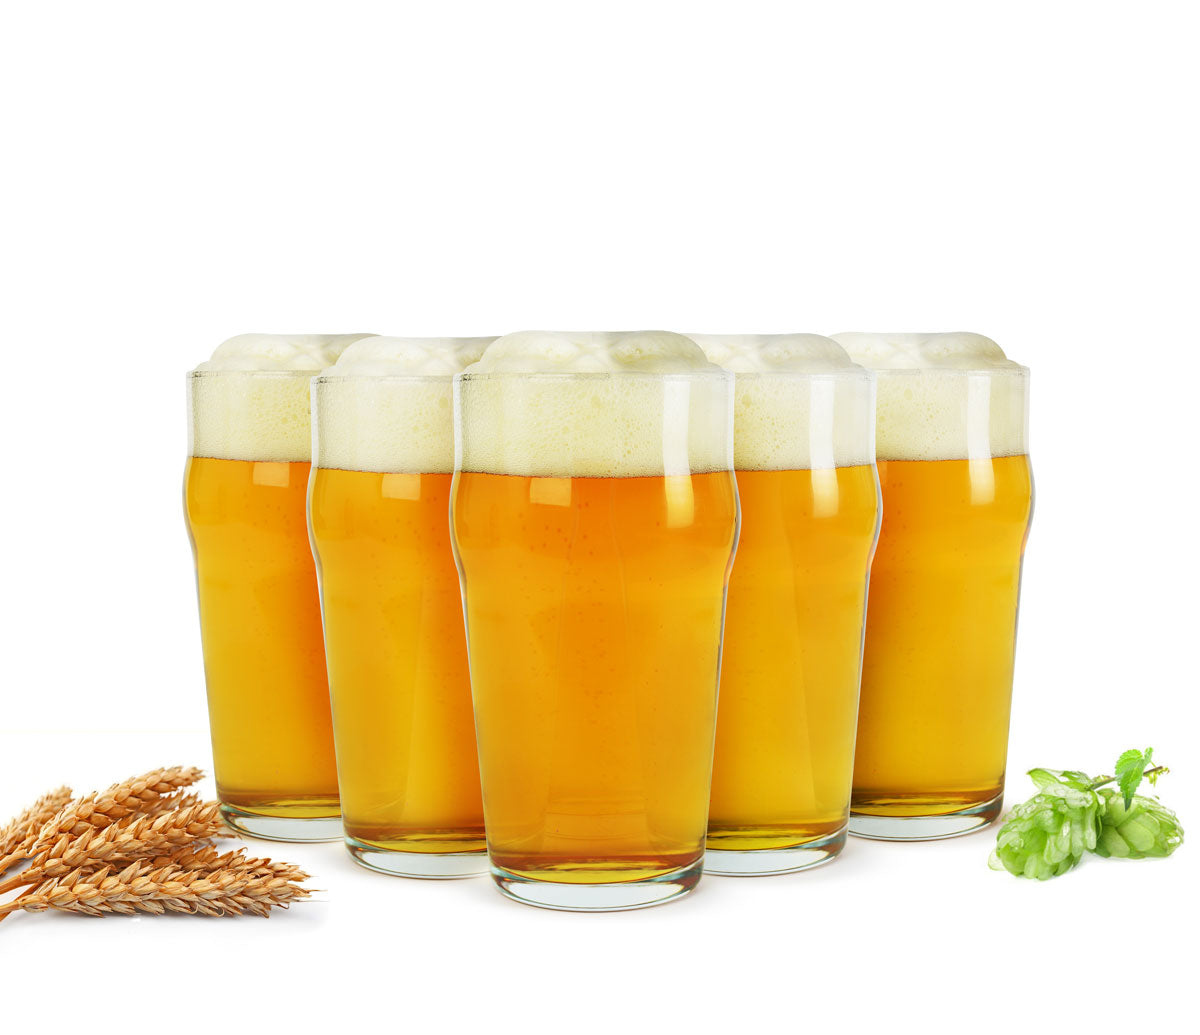 6 verres à pinte 0,5 L verres à bière verres à bière verres à pinte verres à boire verres à jus